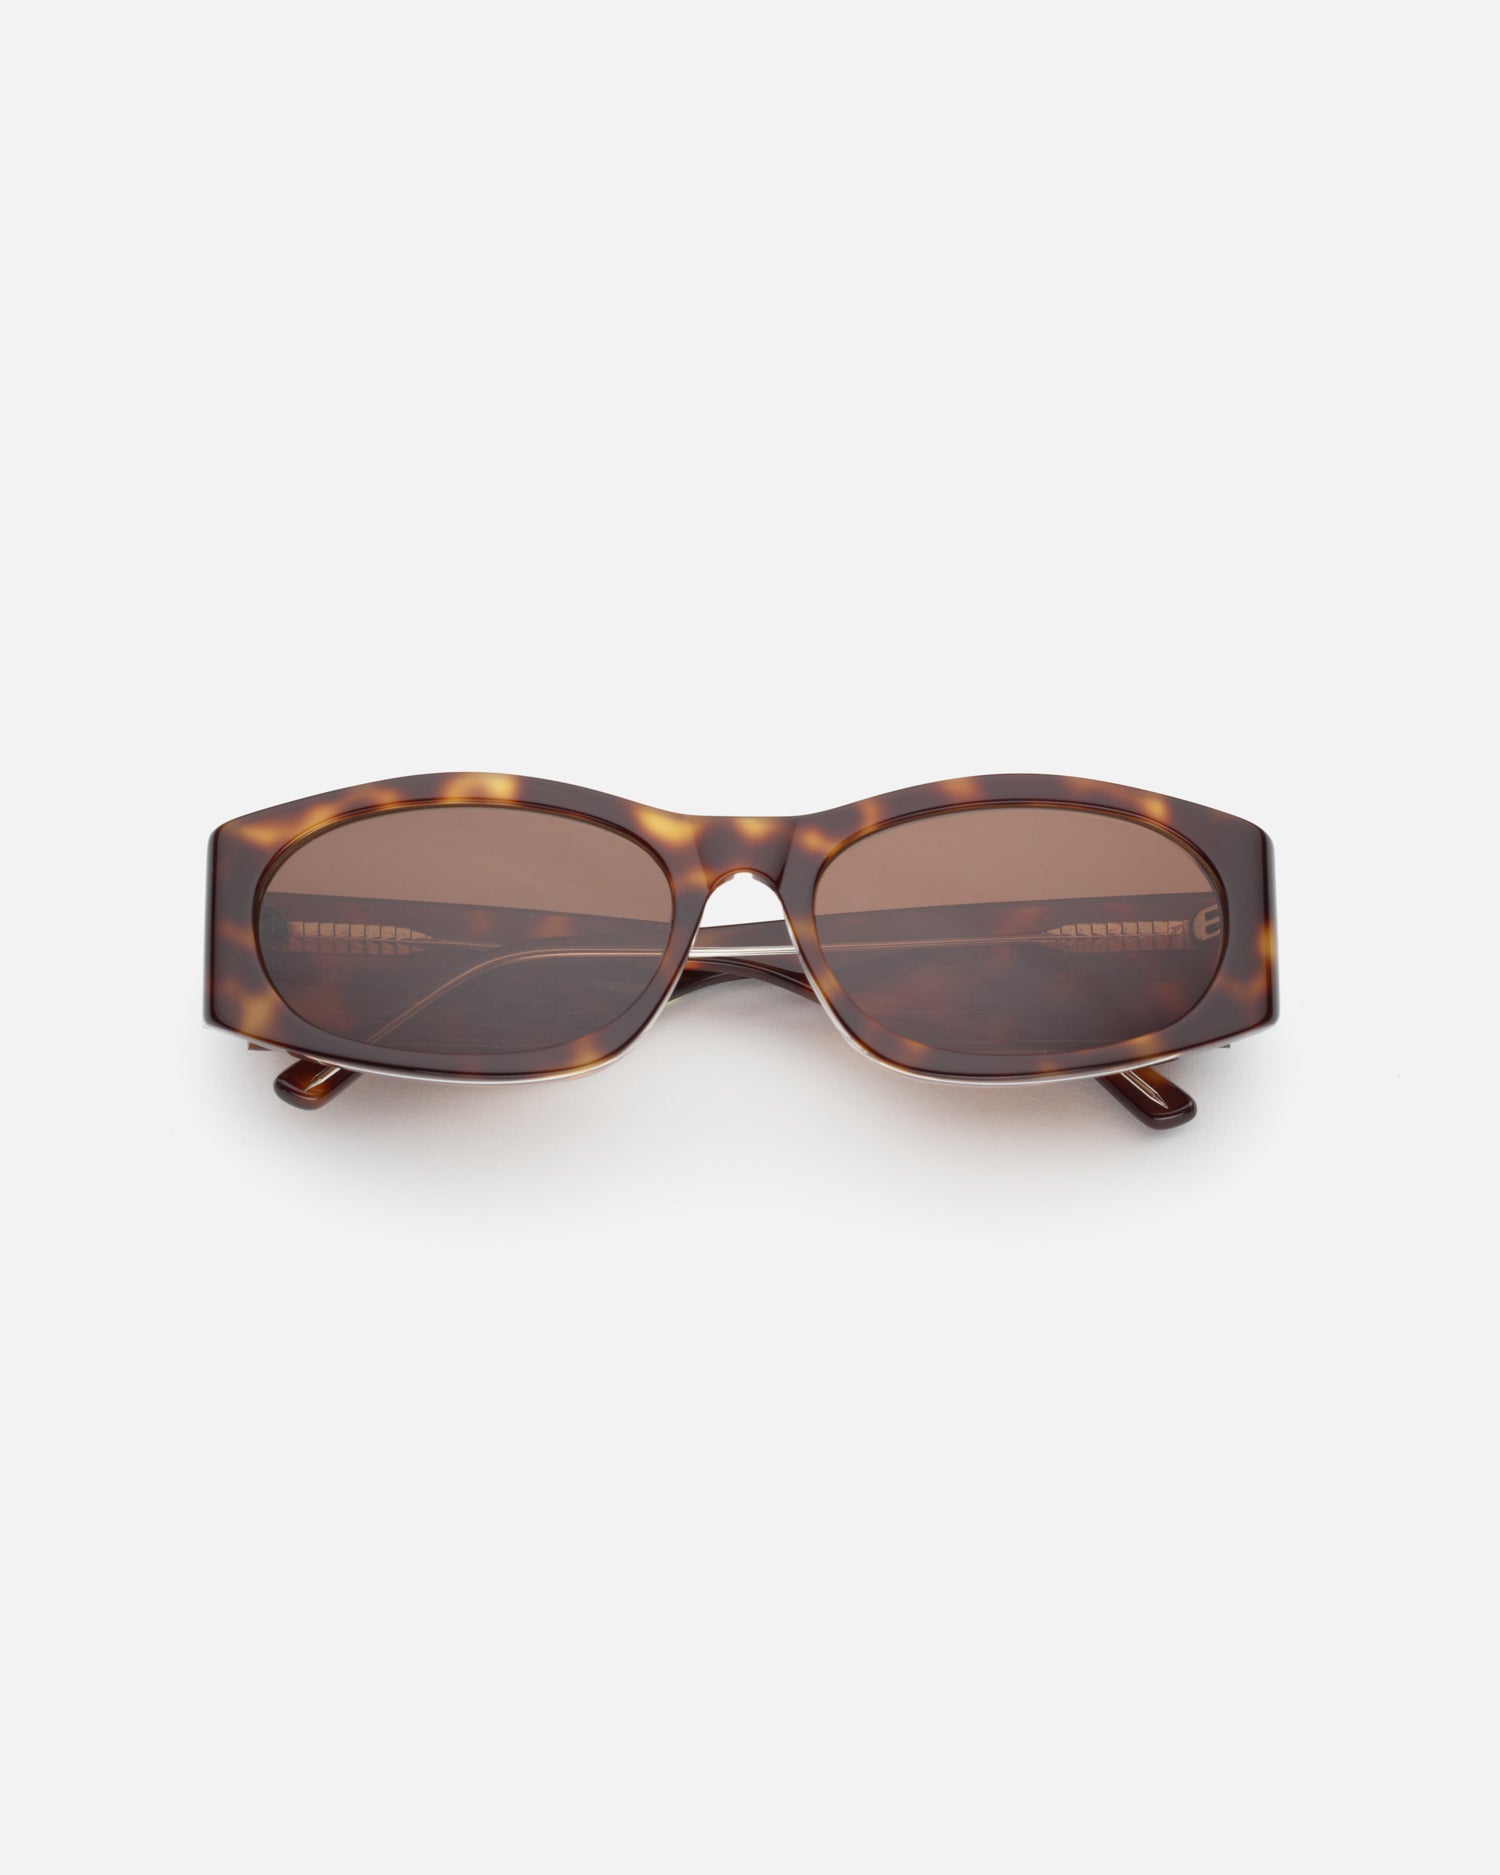 Romy Sunglasses in Tort by LU GOLDIE Eyewear